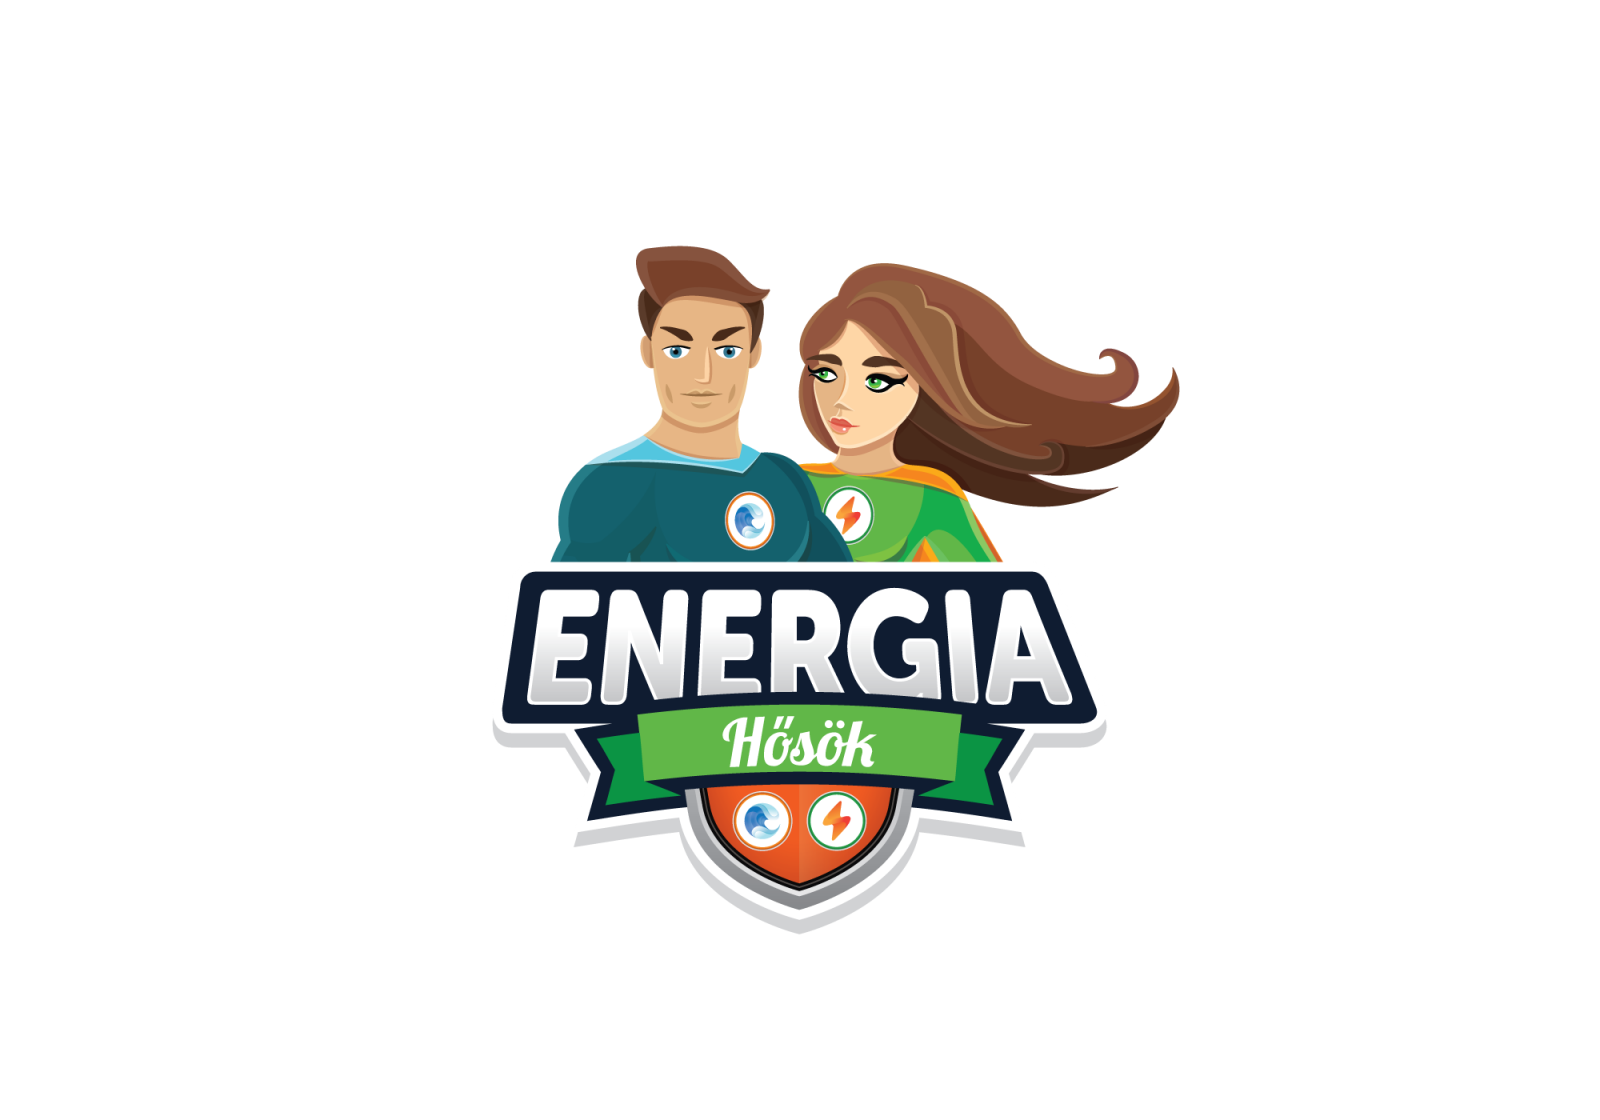 ENERGIA Hősök- Környezetvédelmi vetélkedő